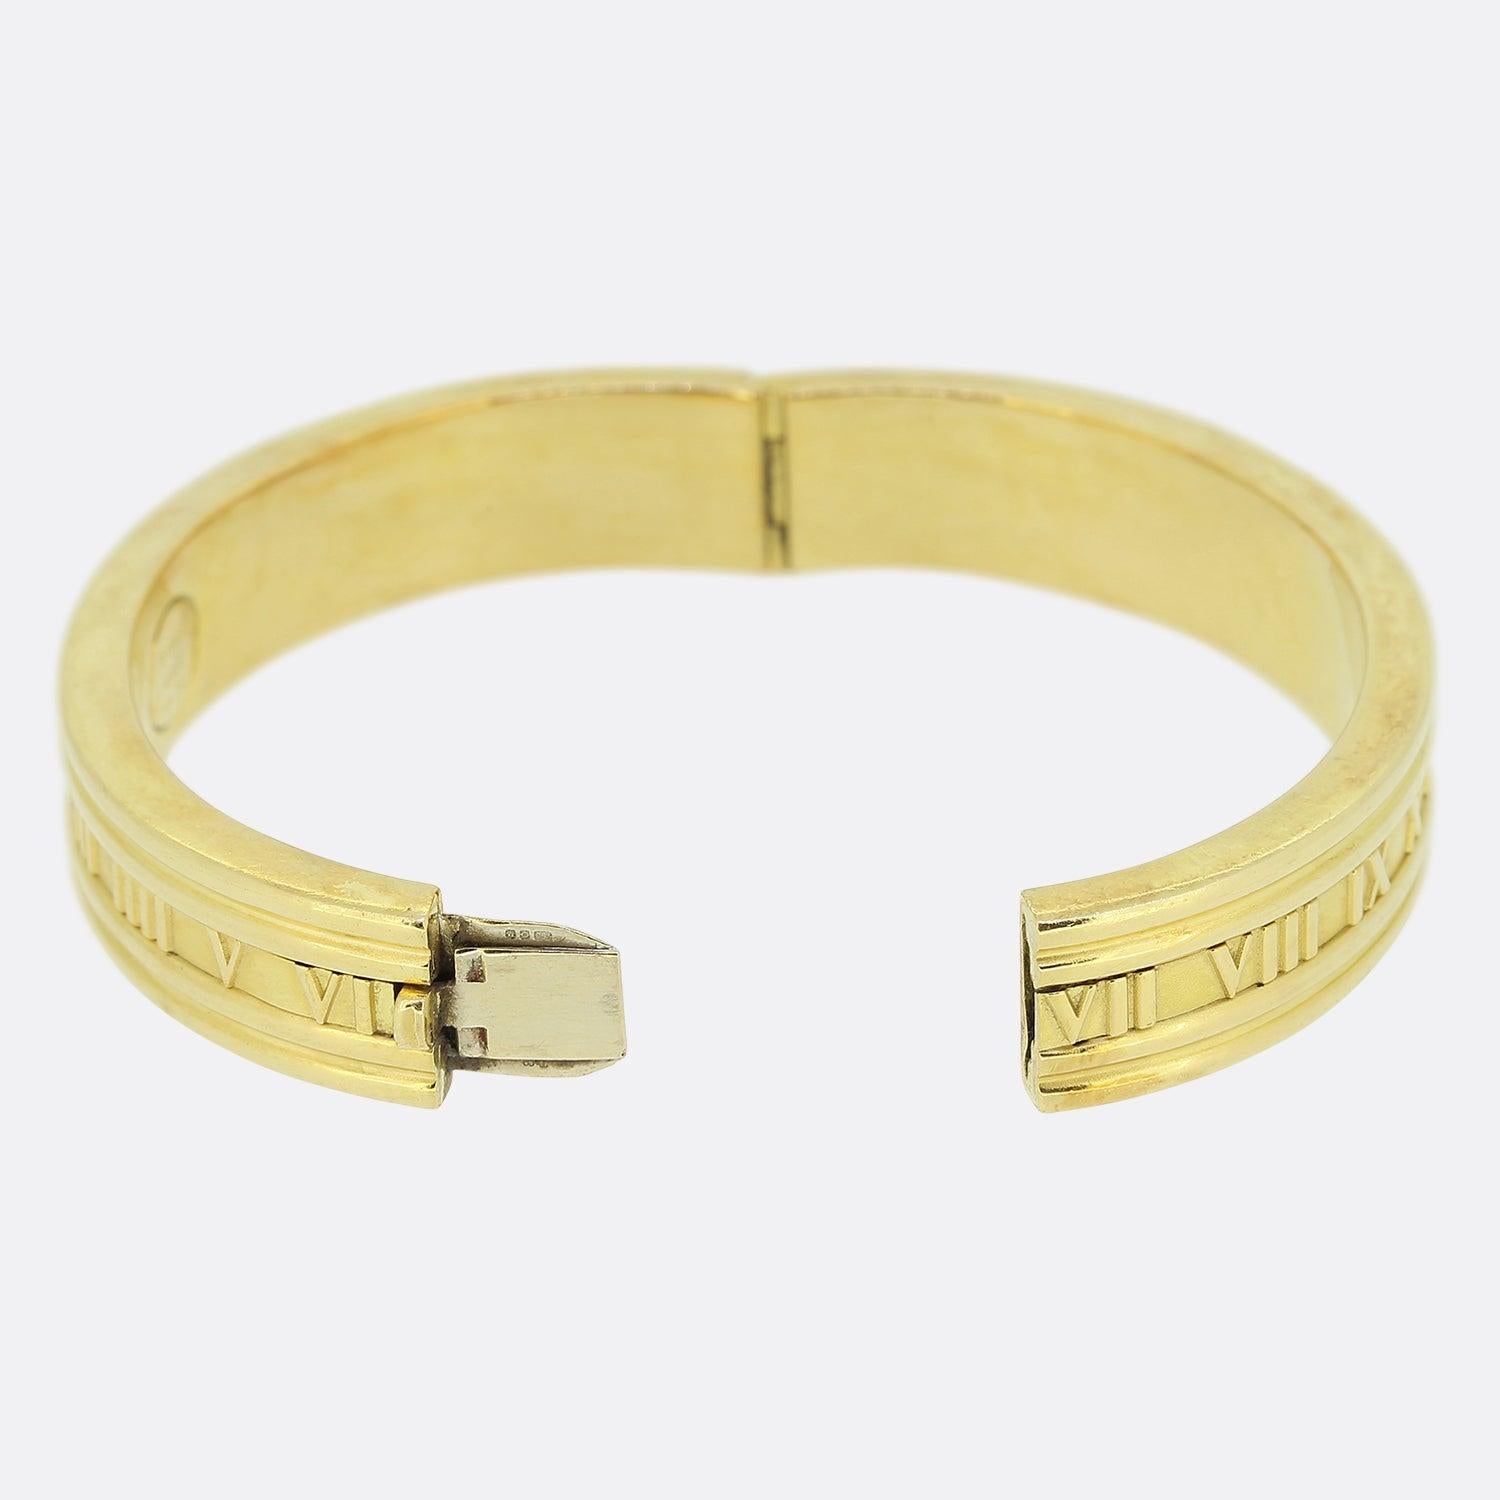 Nous avons ici un bracelet en or jaune 18ct du créateur de bijoux de luxe Tiffany & Co. Le bracelet fait partie de la Collection S/One et présente le motif emblématique des chiffres romains sur le pourtour du bracelet. 

Condit : Utilisé